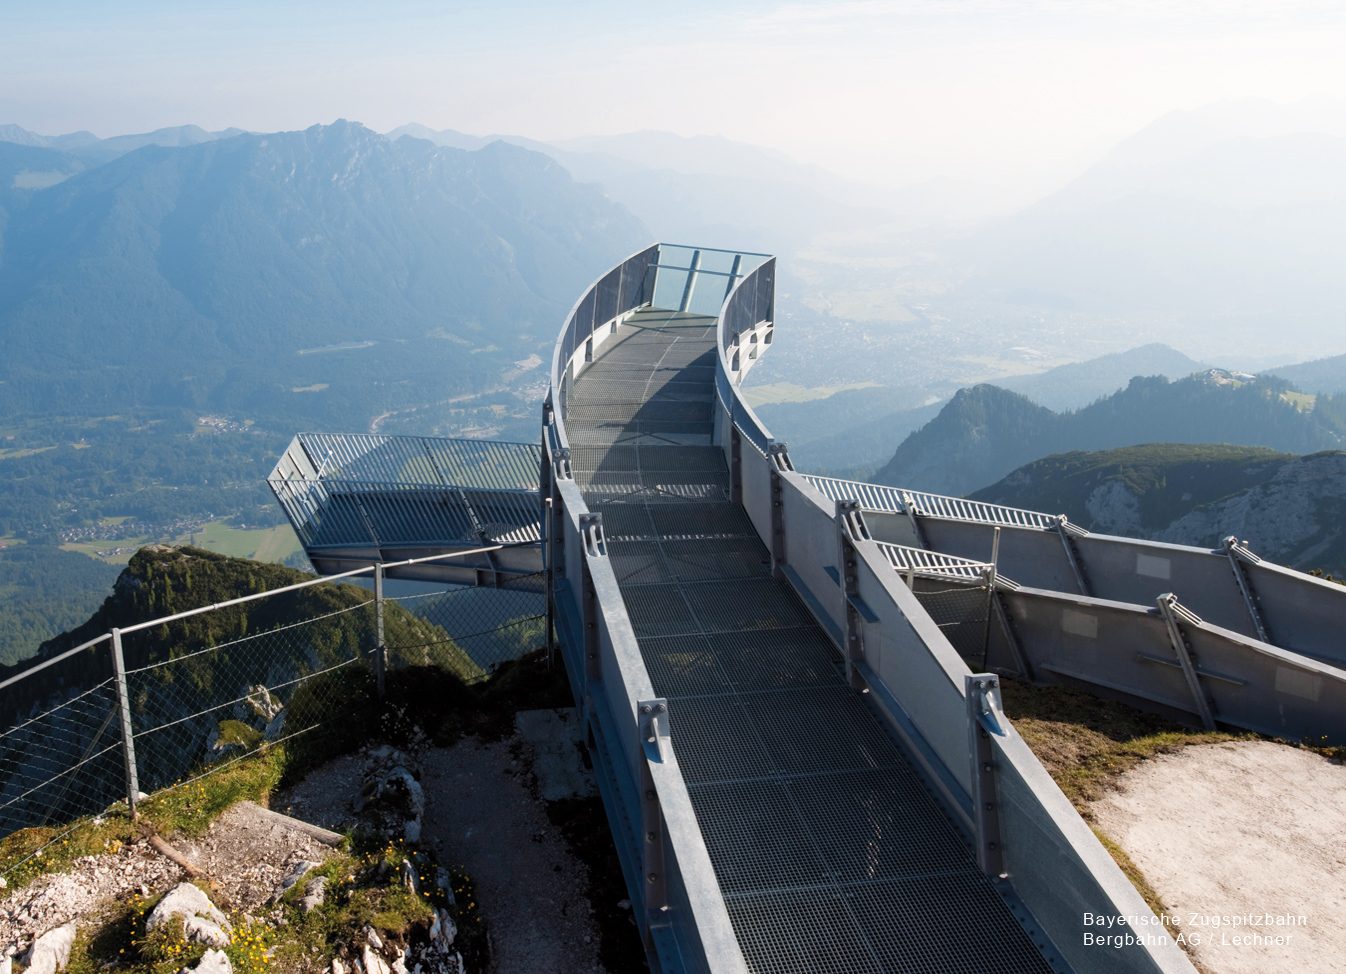 Alpspix, Errichtung einer Aussichtsplattform, Bergstation Alpspitzbahn